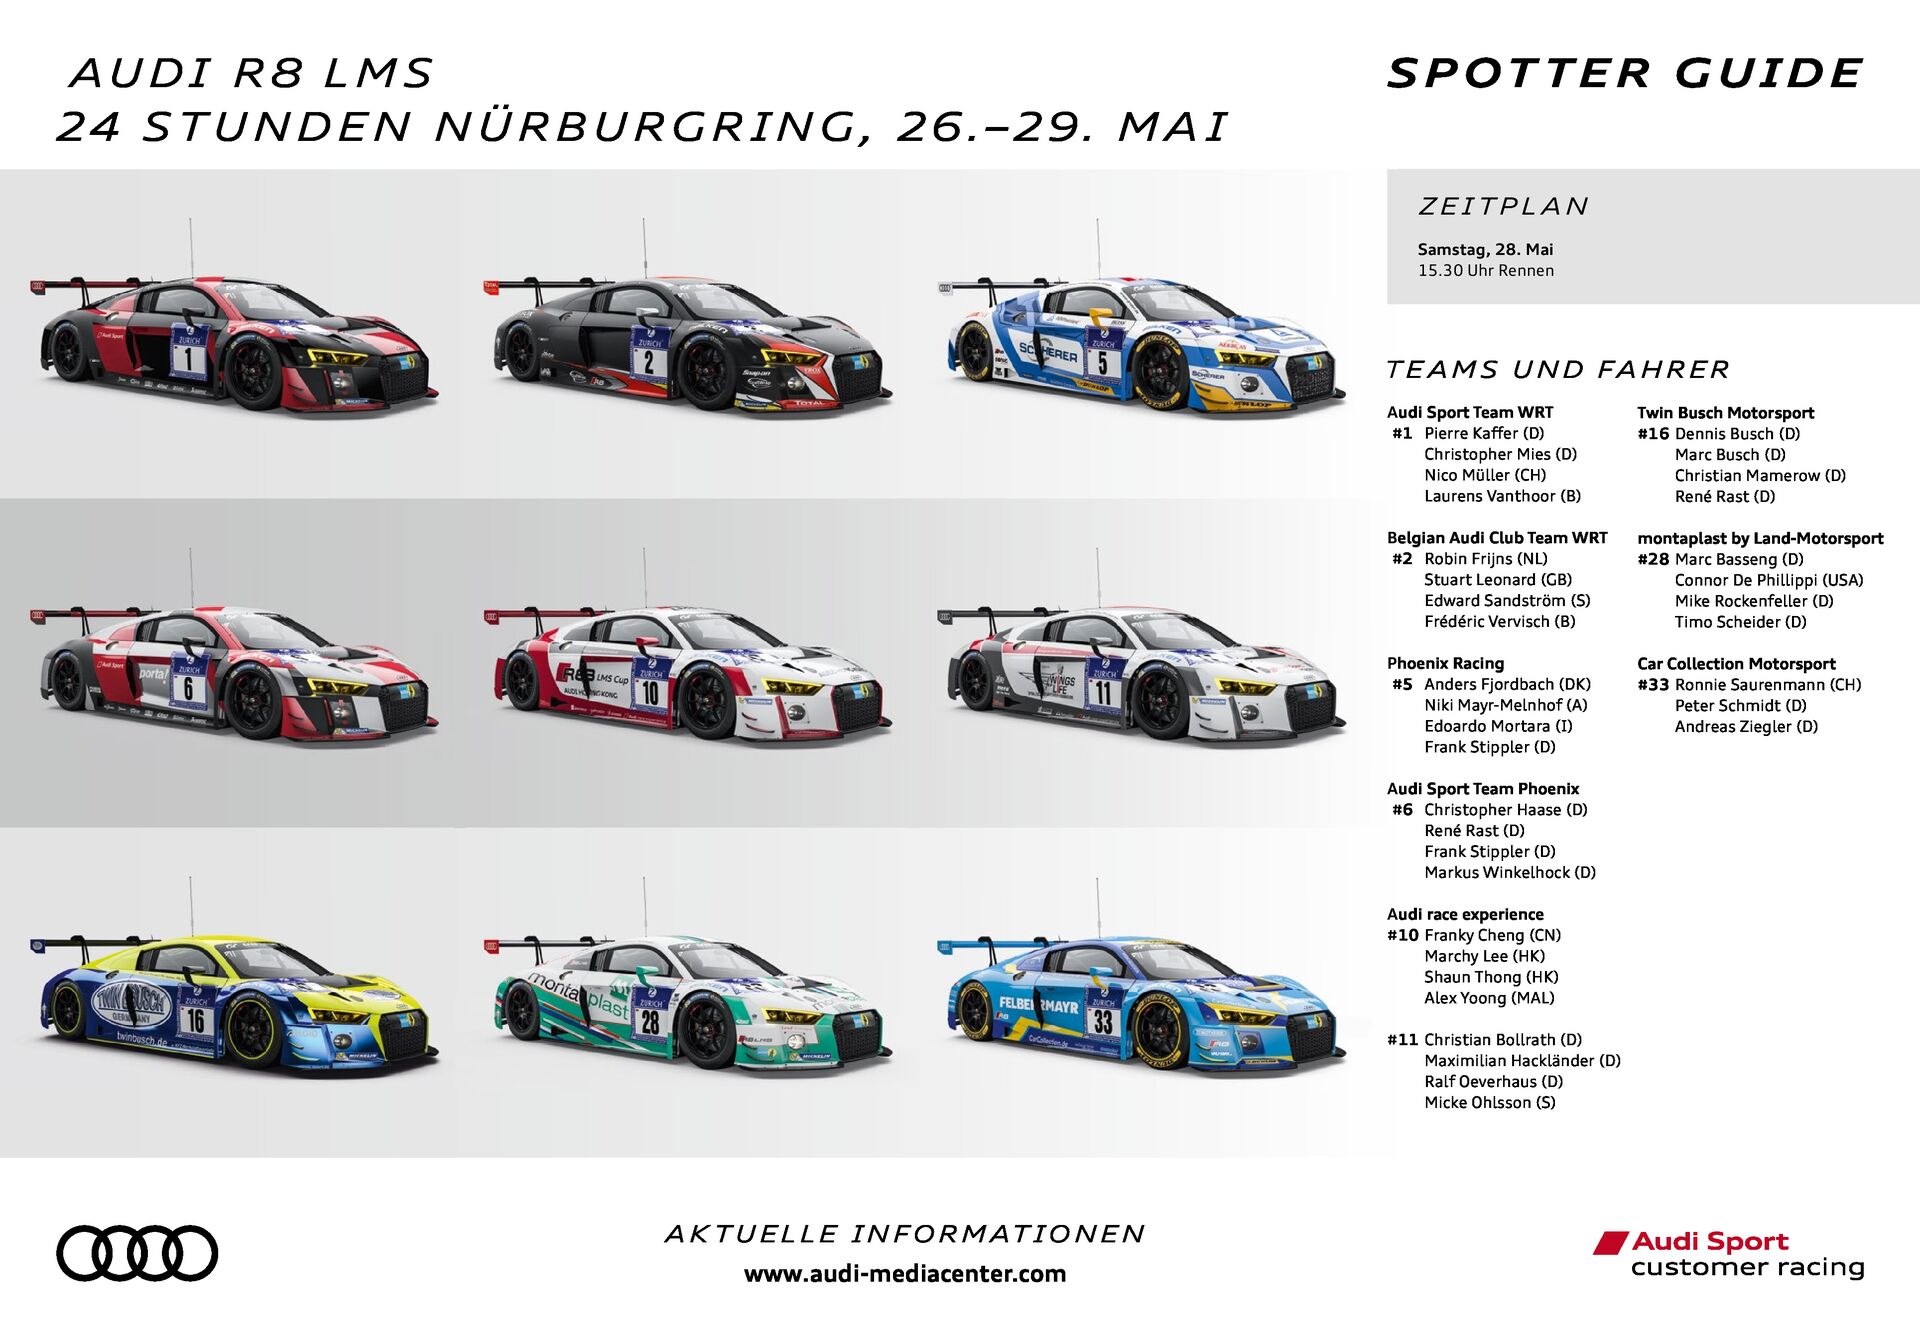 Spotter Guide Audi R8 LMS – 24 Stunden Nürburgring